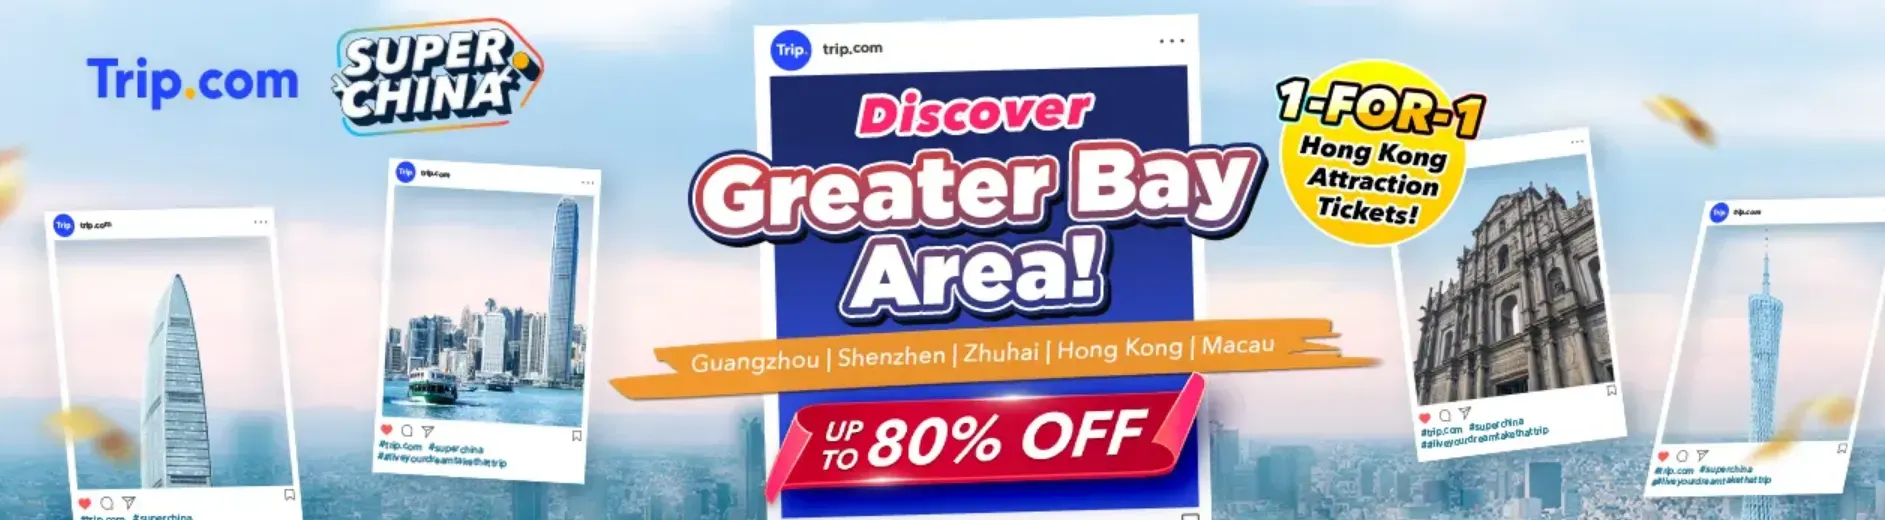 Trip.com Promo Code Singapore: Super China, Greater Bay Area